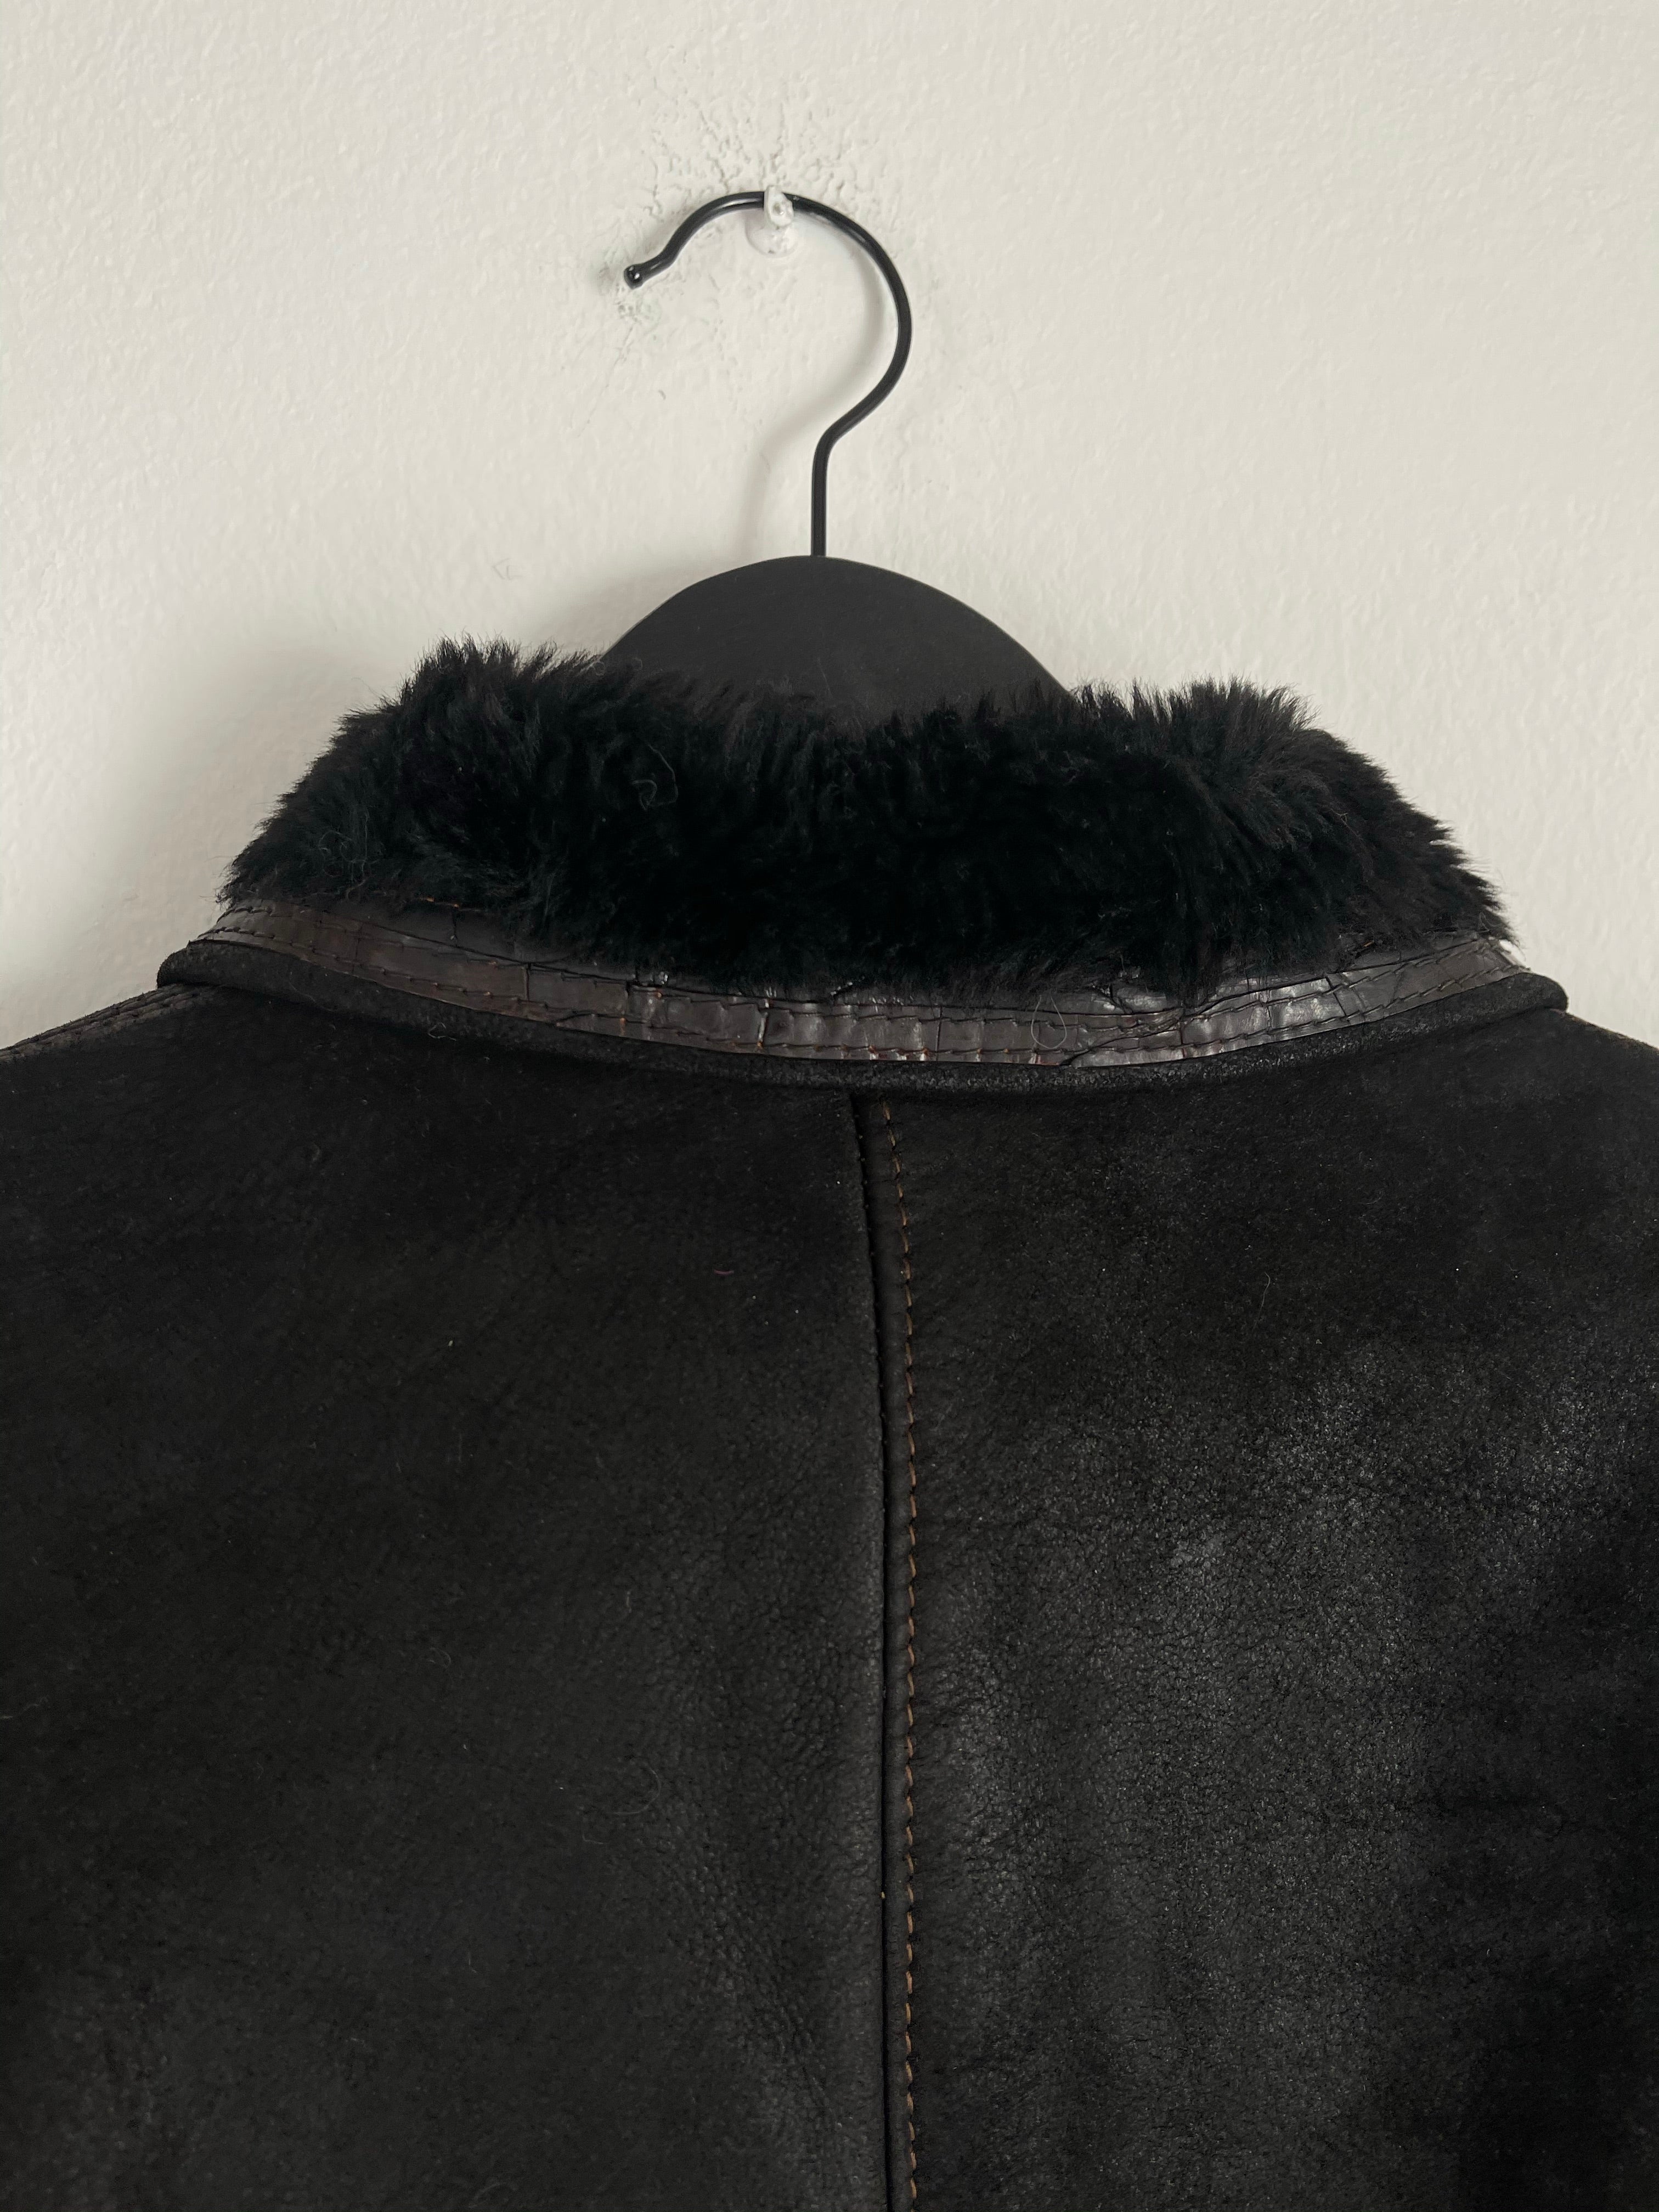 Black shearling jacket